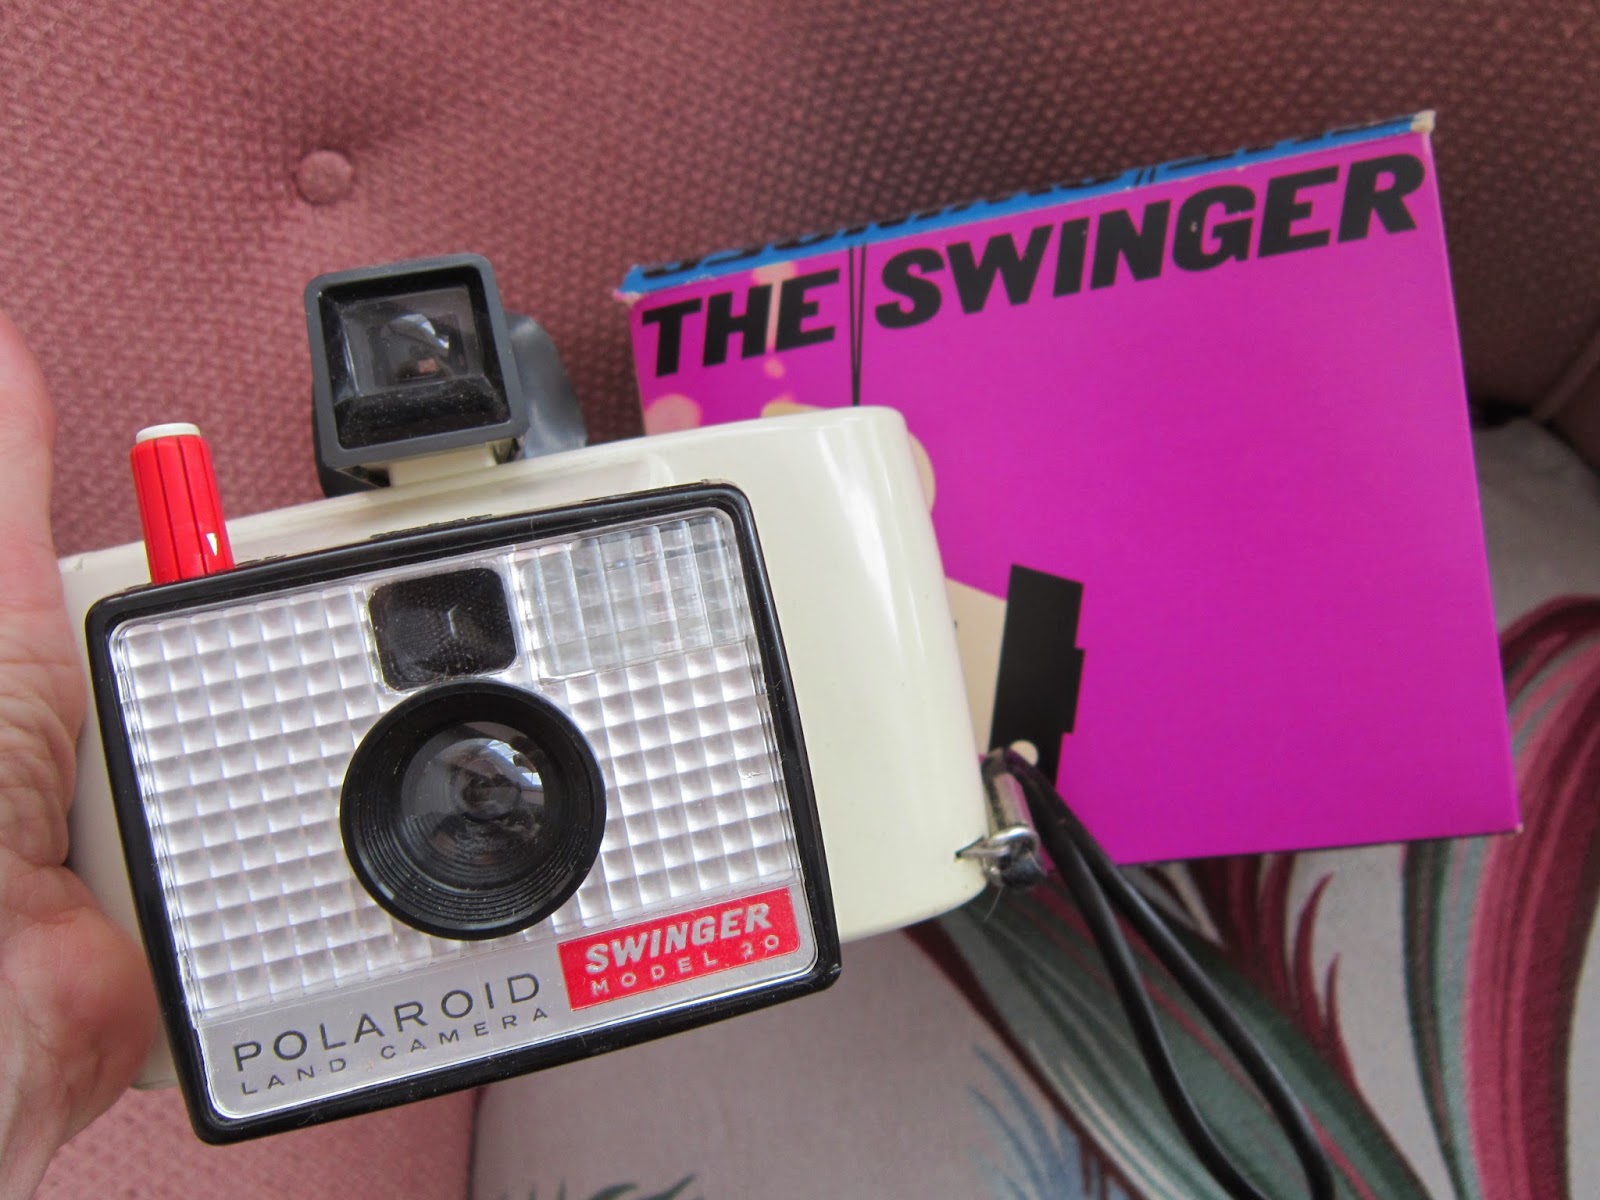 meet the swinger the polaroid swinger